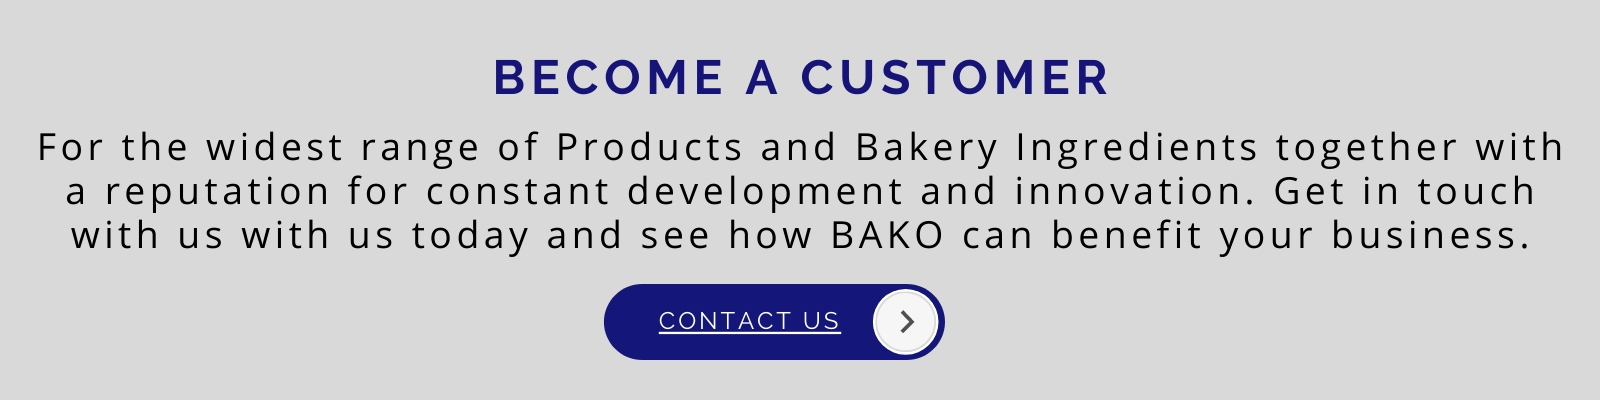 Become a customer at Bako